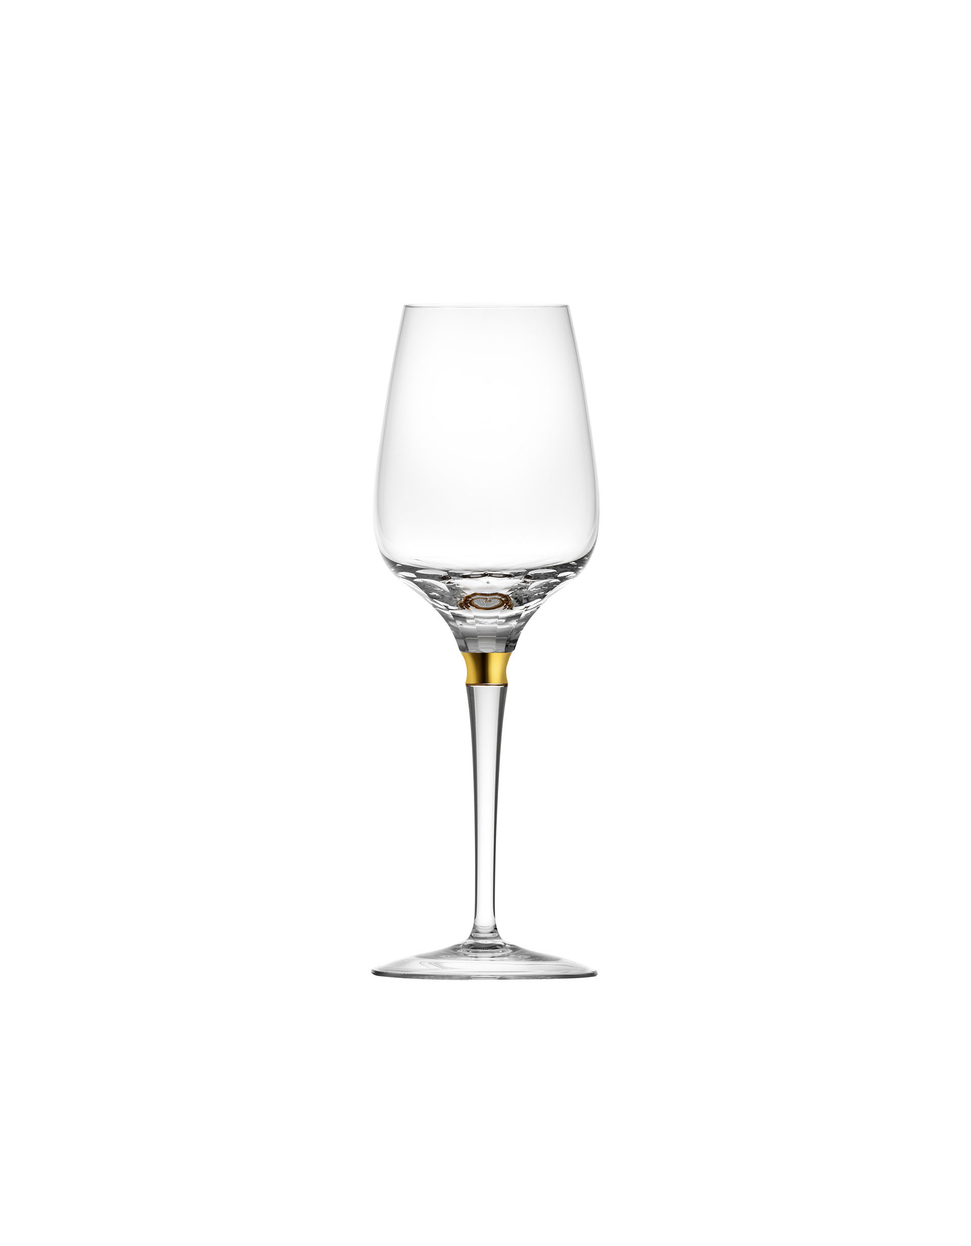 Jewel wine glass, 350 ml